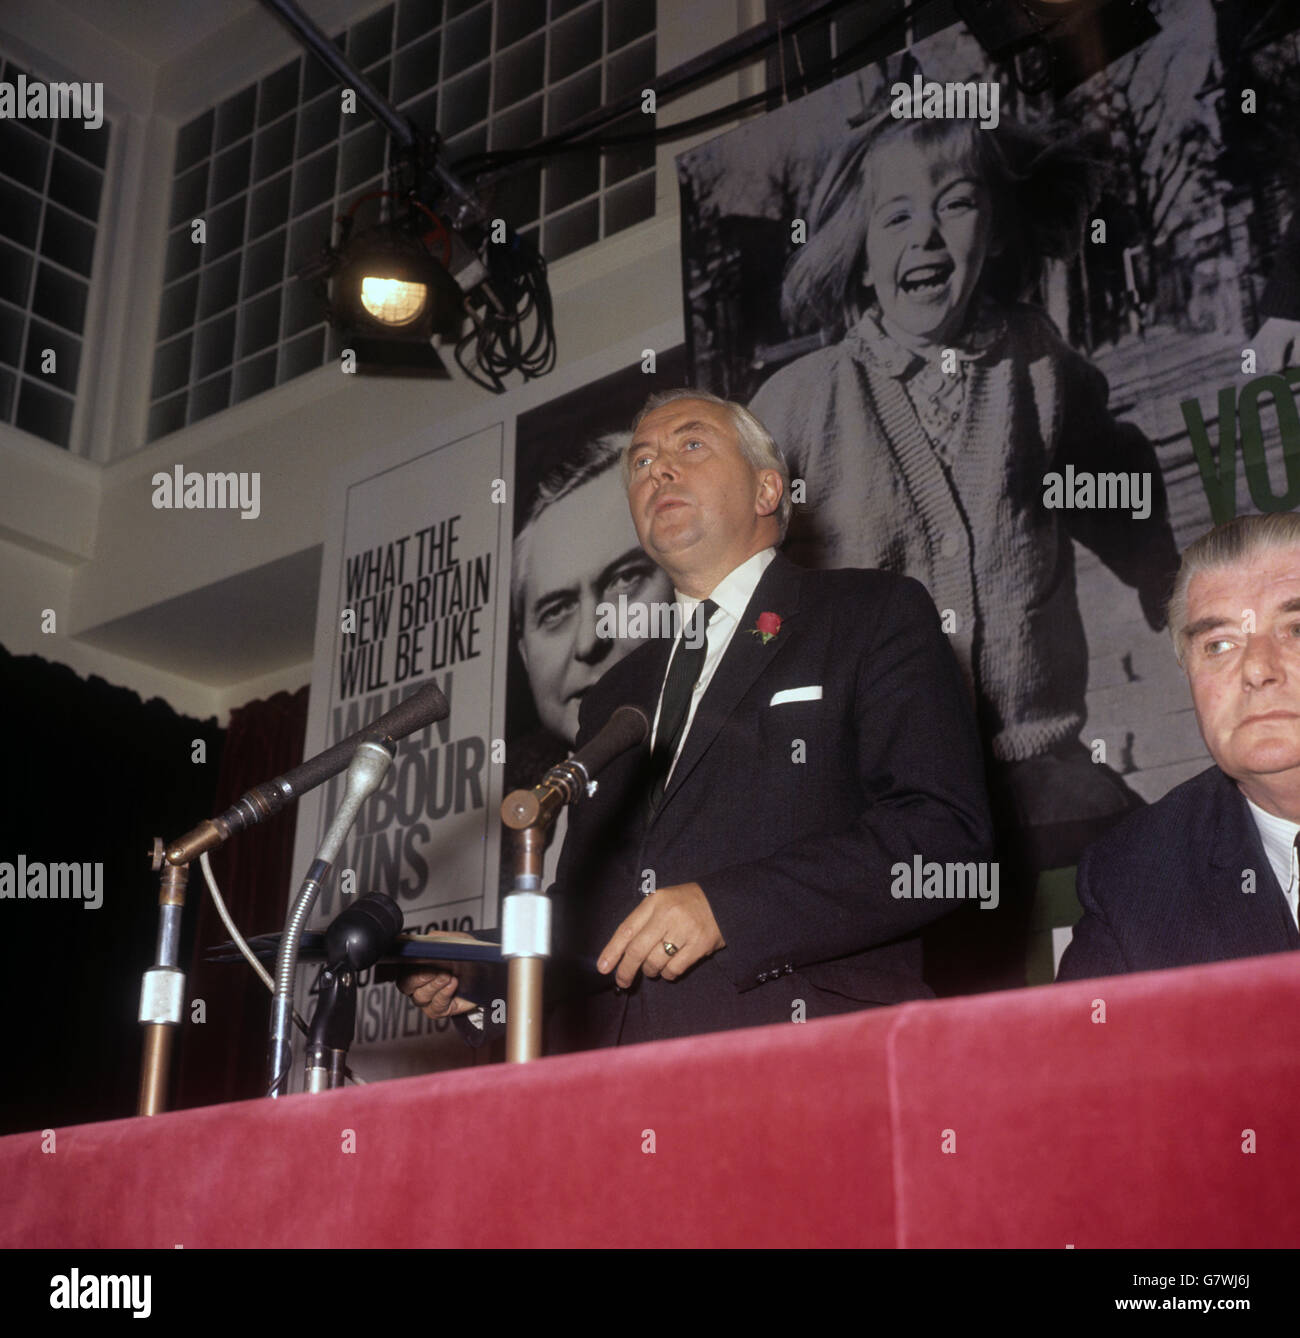 Leader dell'opposizione, Labour, Harold Wilson parla ad una conferenza stampa elettorale generale, Foto Stock